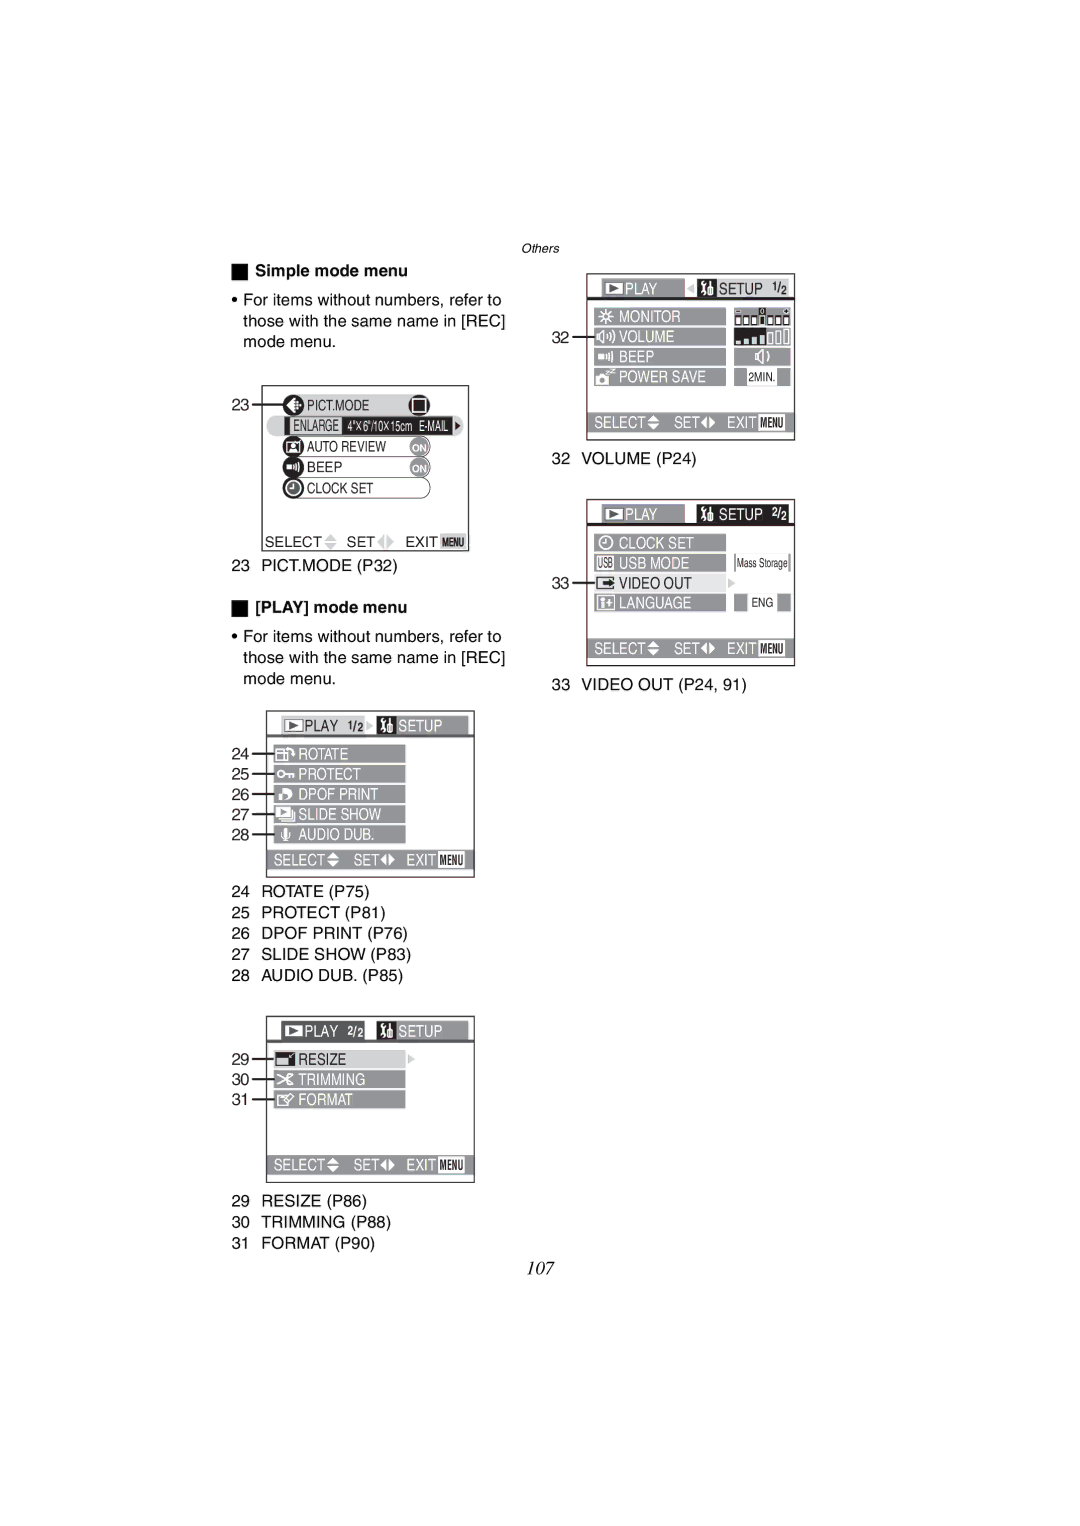 Panasonic DMC-FX1GN, DMC-FX5GN Simple mode menu, Play mode menu, Dpof Print P76 Slide Show P83, Trimming P88 